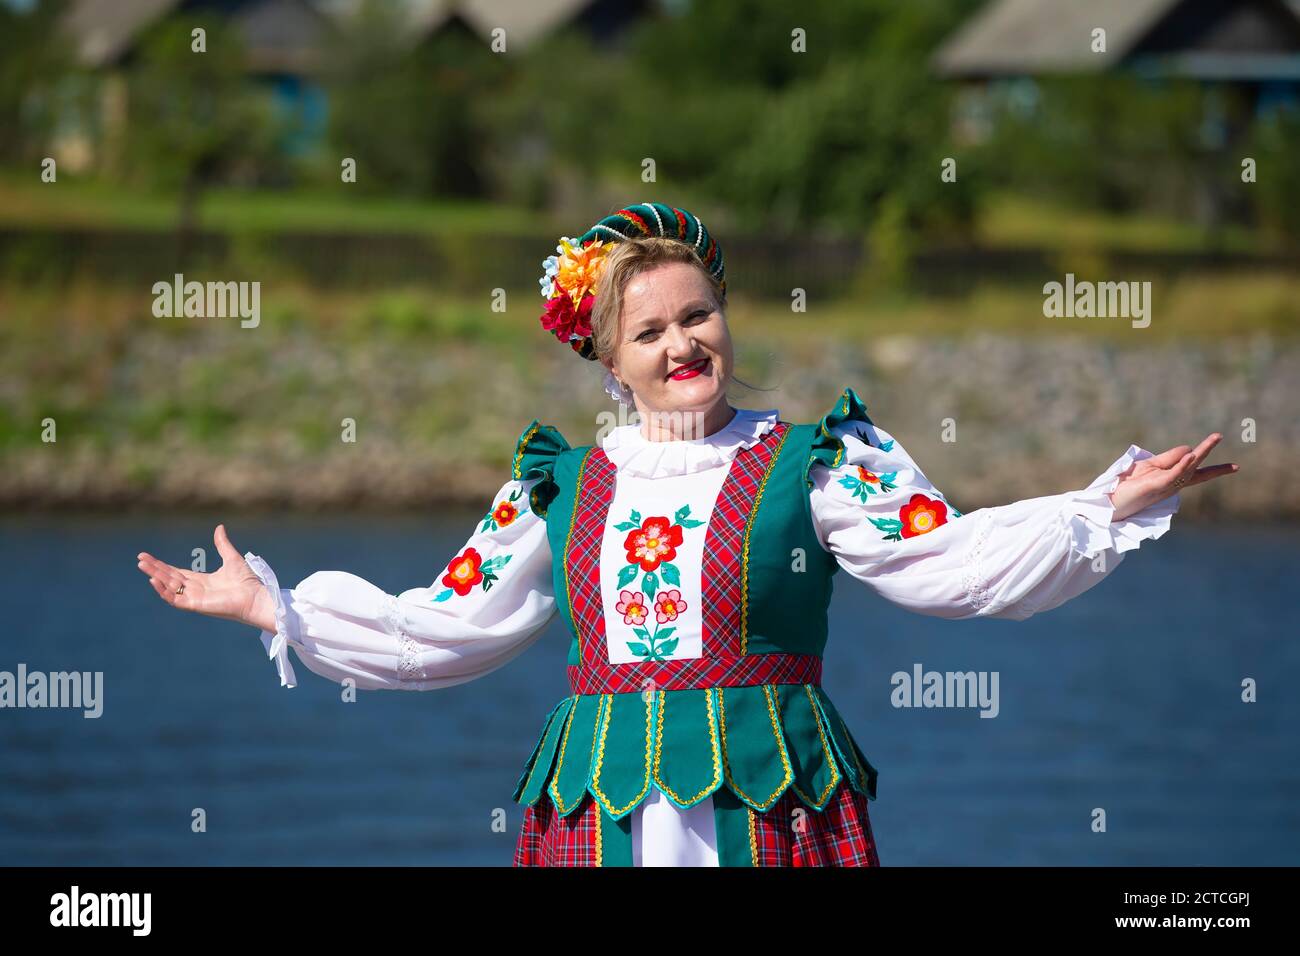 08 29 2020 Belarus, Lyaskovichi. Celebration in the city. Beautiful Slavic woman. Belarusian or Ukrainian in national dress. Stock Photo